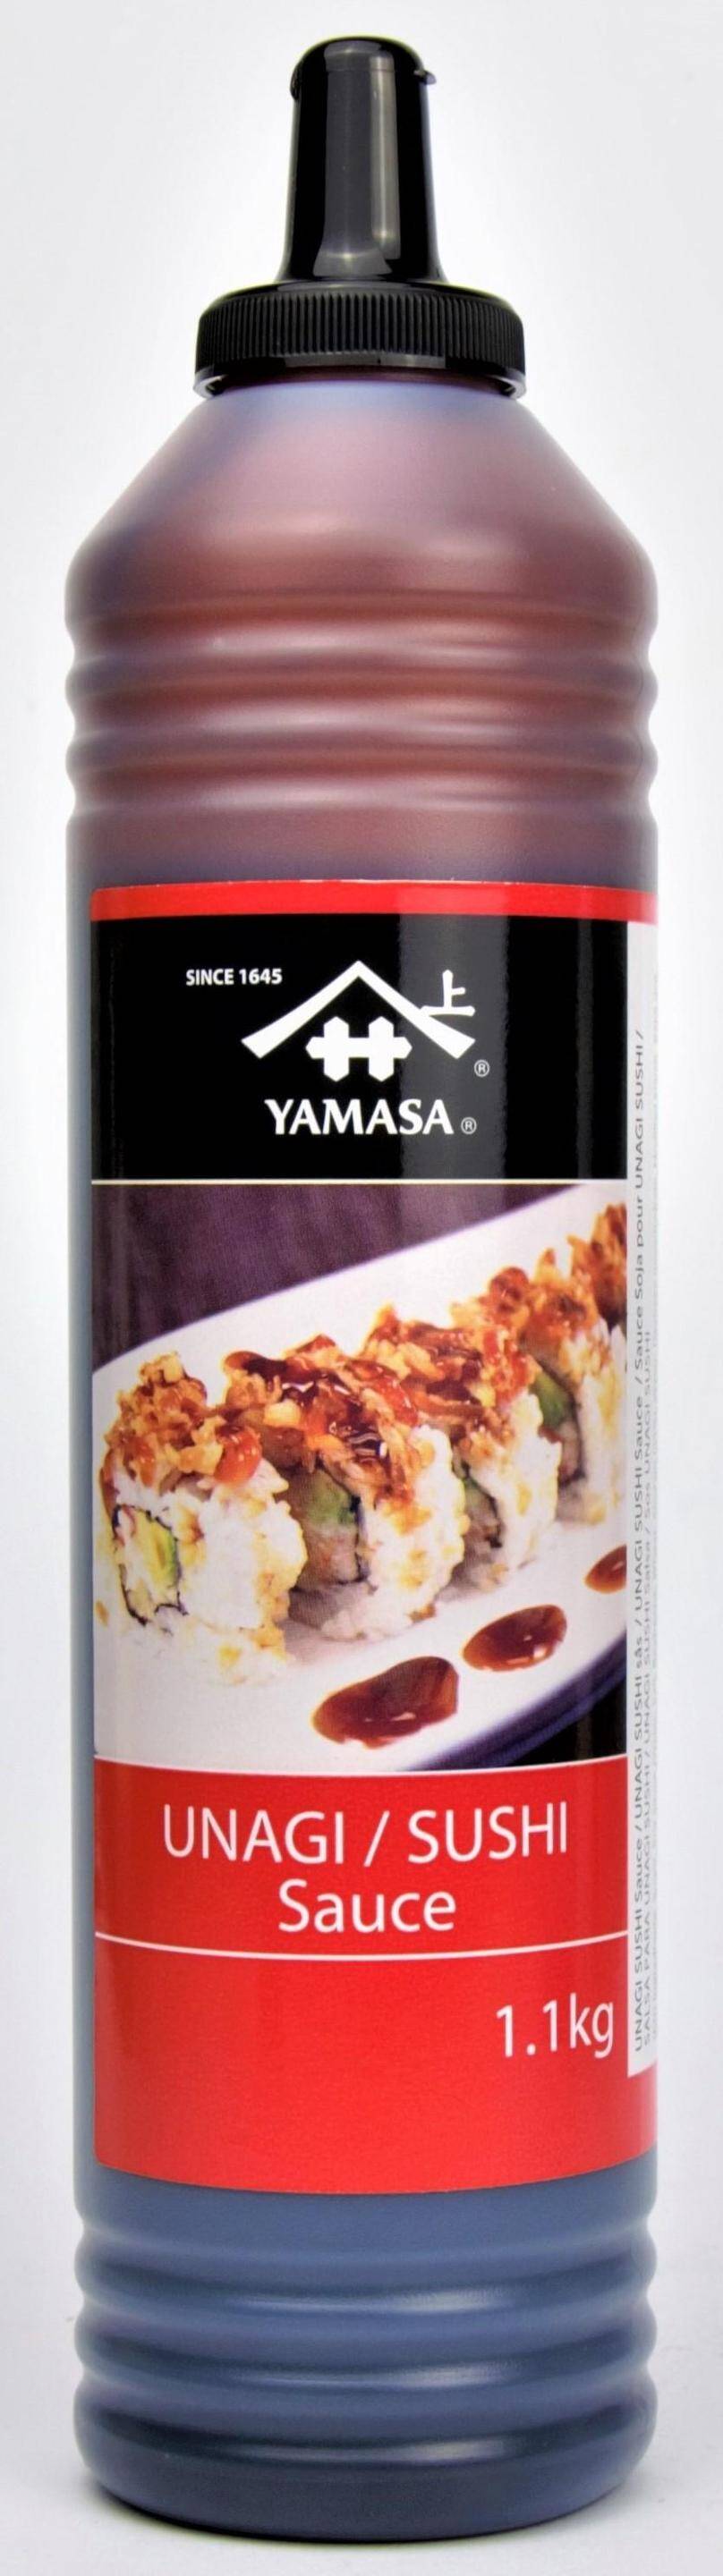 Sos Unagi Sushi Sauce 1,1kg/4 Yamasa FX